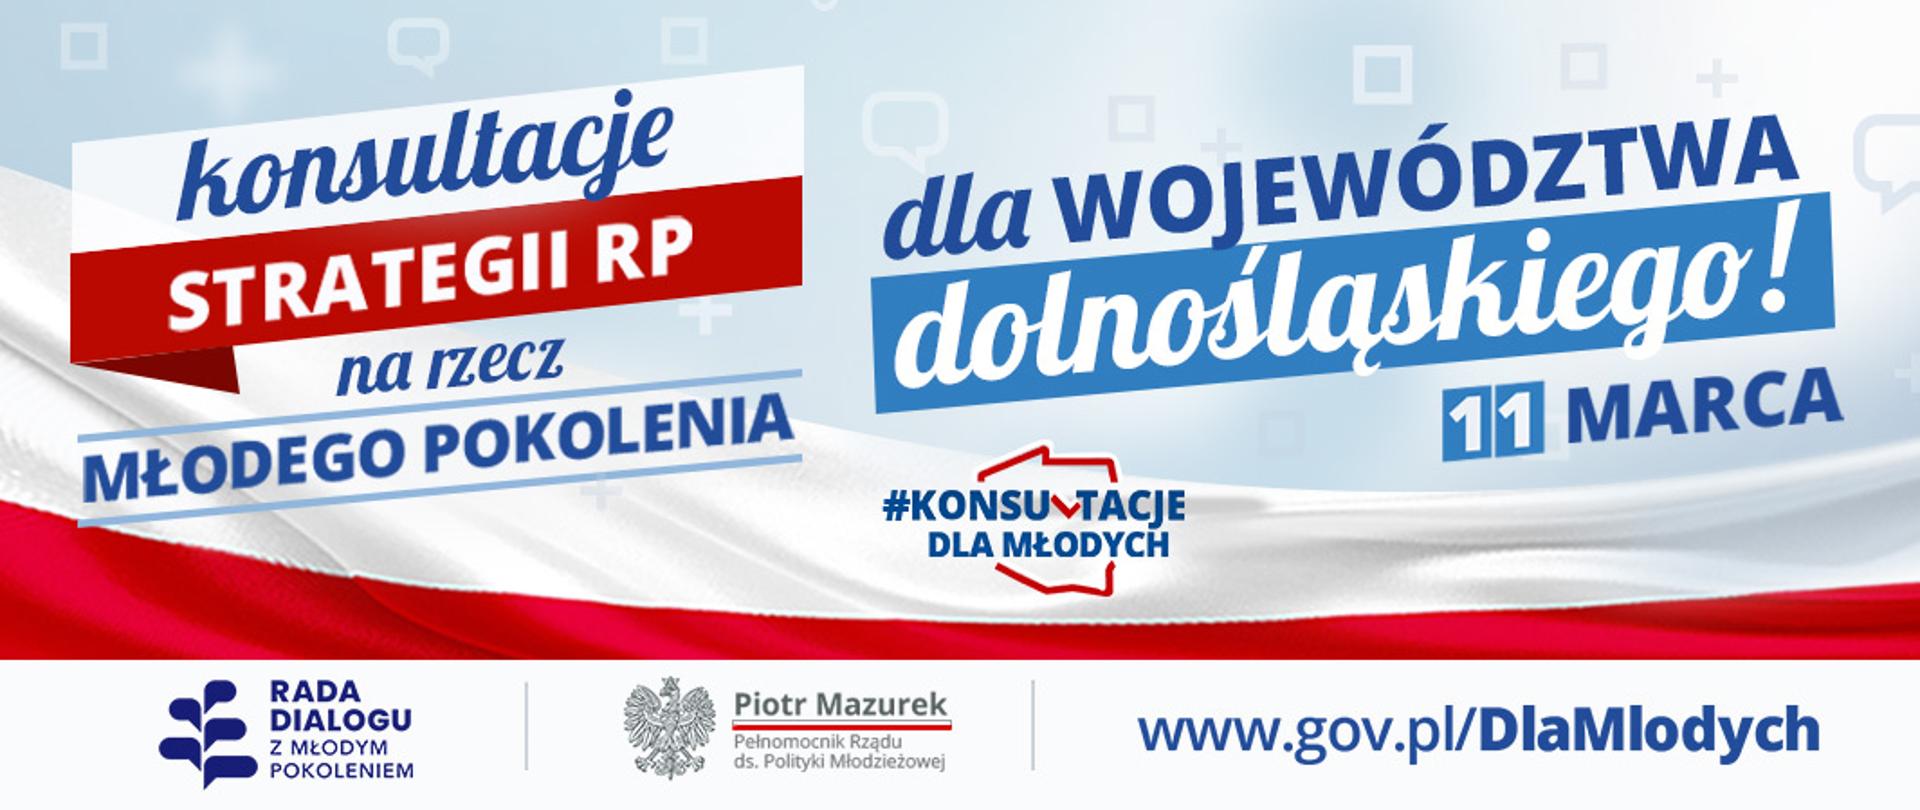 Konsultacja strategii RP na Rzecz Młodego Pokolenia dla województwa dolnośląskiego, zaprasza Piotr Mazurek